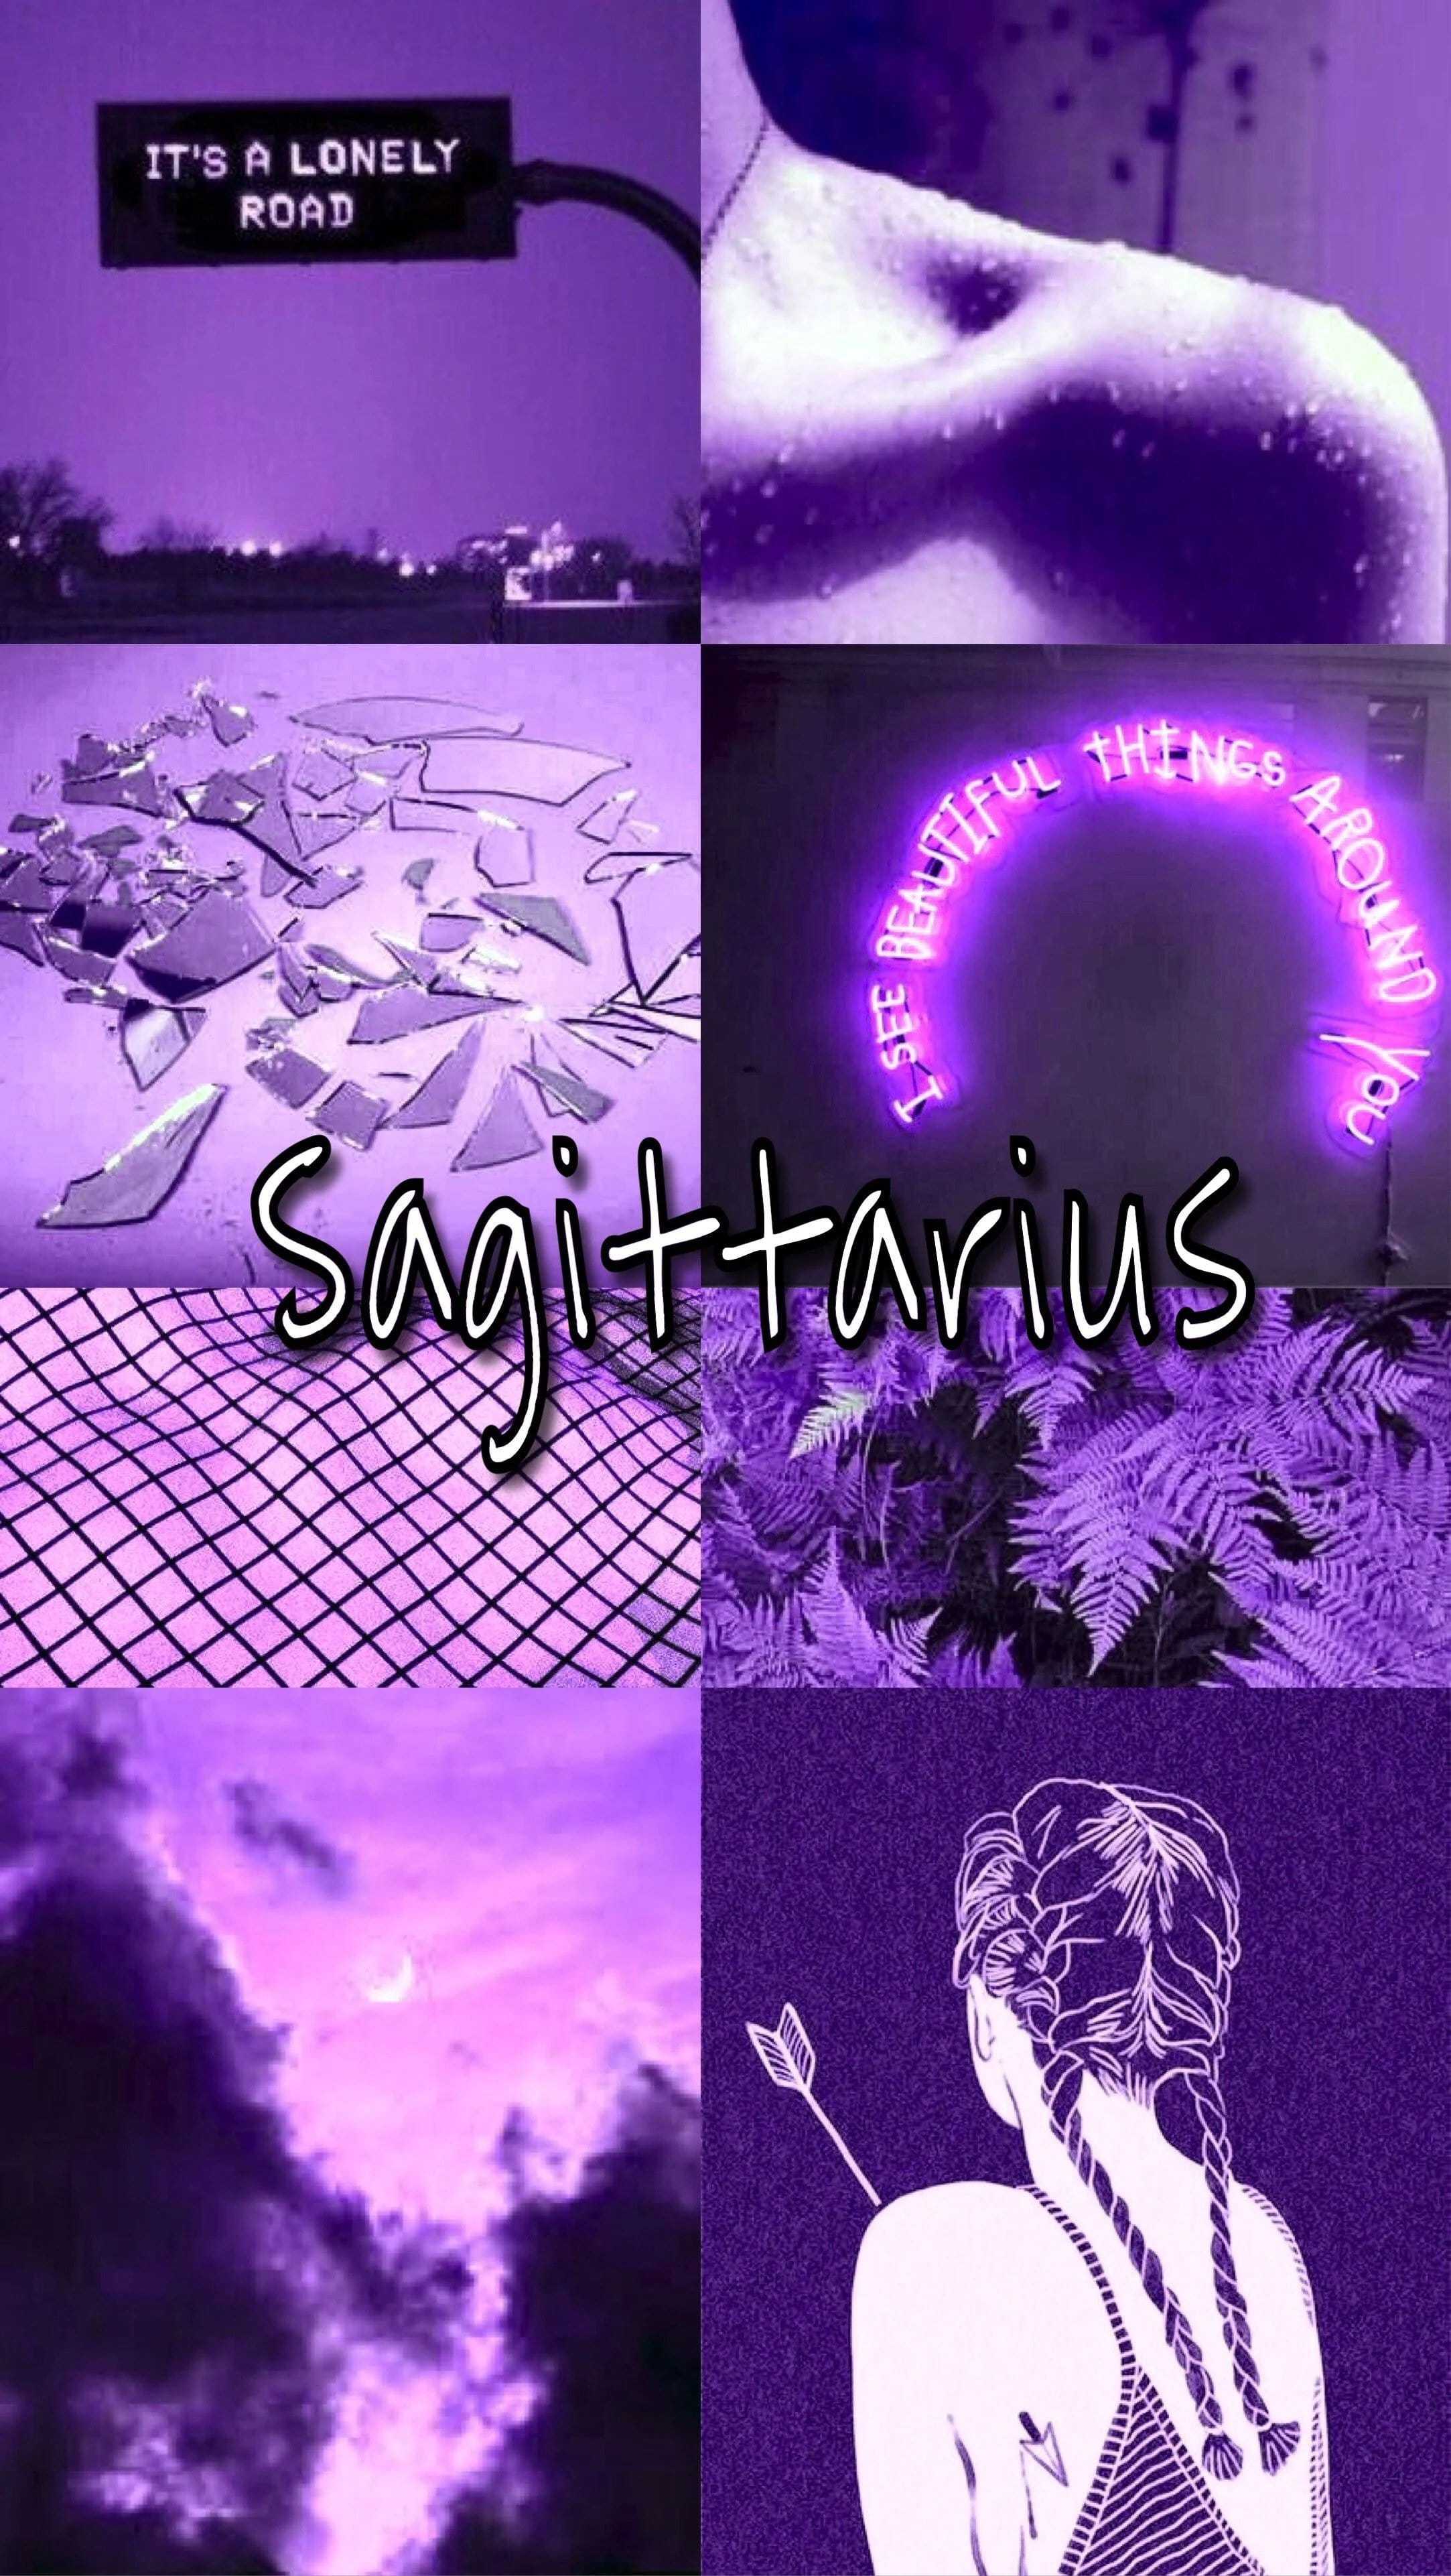 15 Best Sagittarius wallpaper ideas  sagittarius wallpaper sagittarius  zodiac signs sagittarius